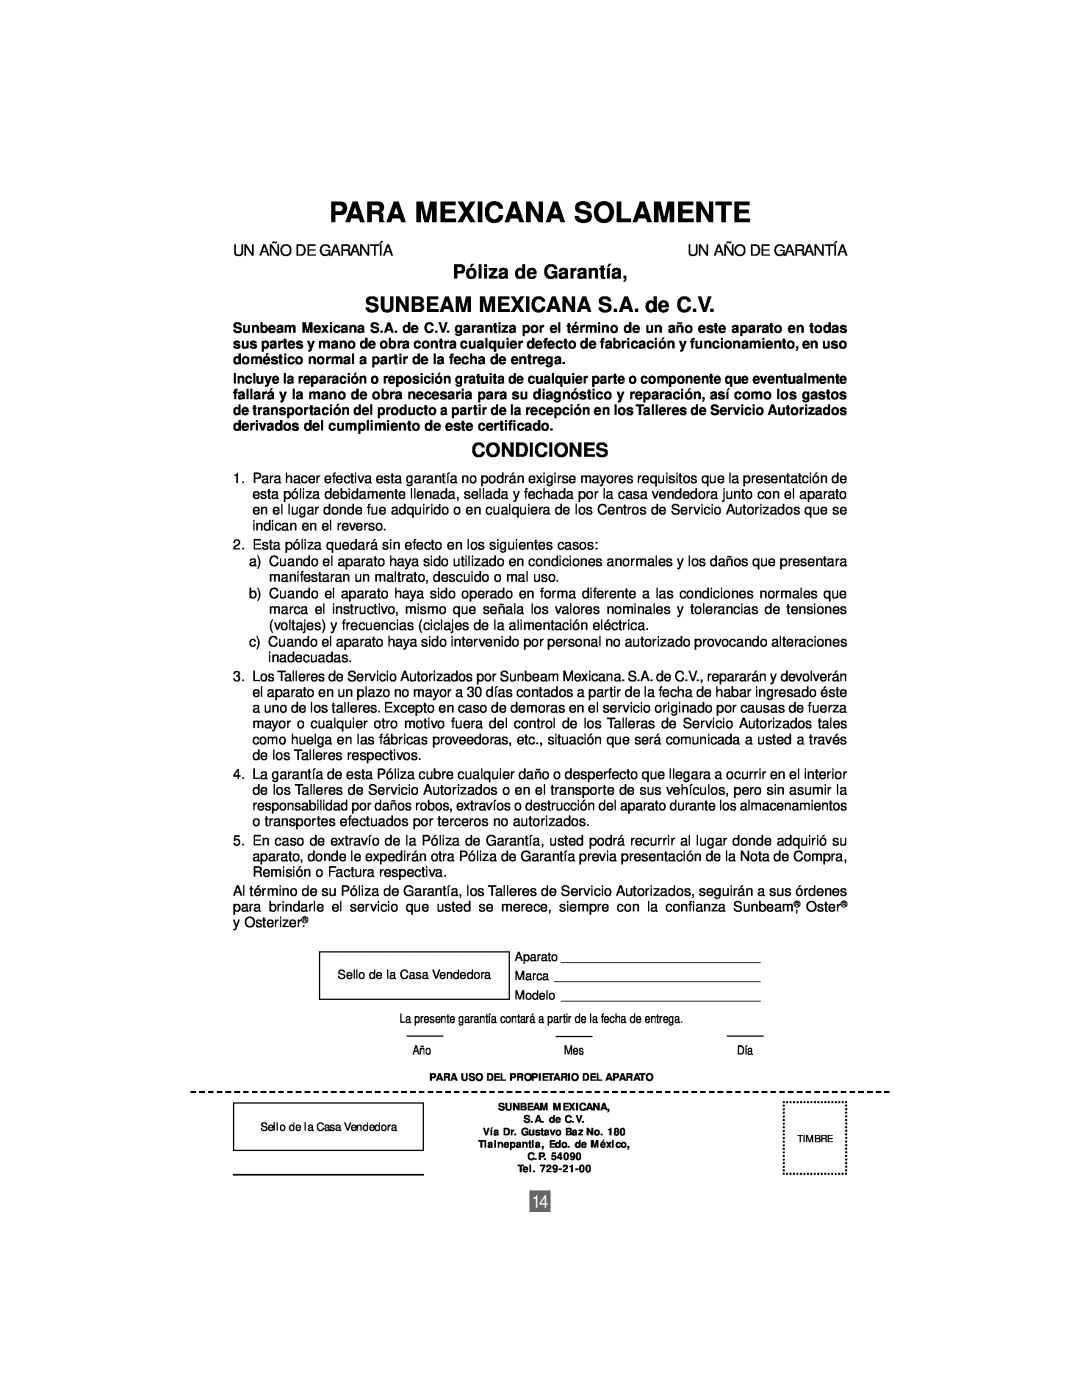 Sunbeam 3206 instruction manual SUNBEAM MEXICANA S.A. de C.V, Para Mexicana Solamente, Póliza de Garantía, Condiciones 